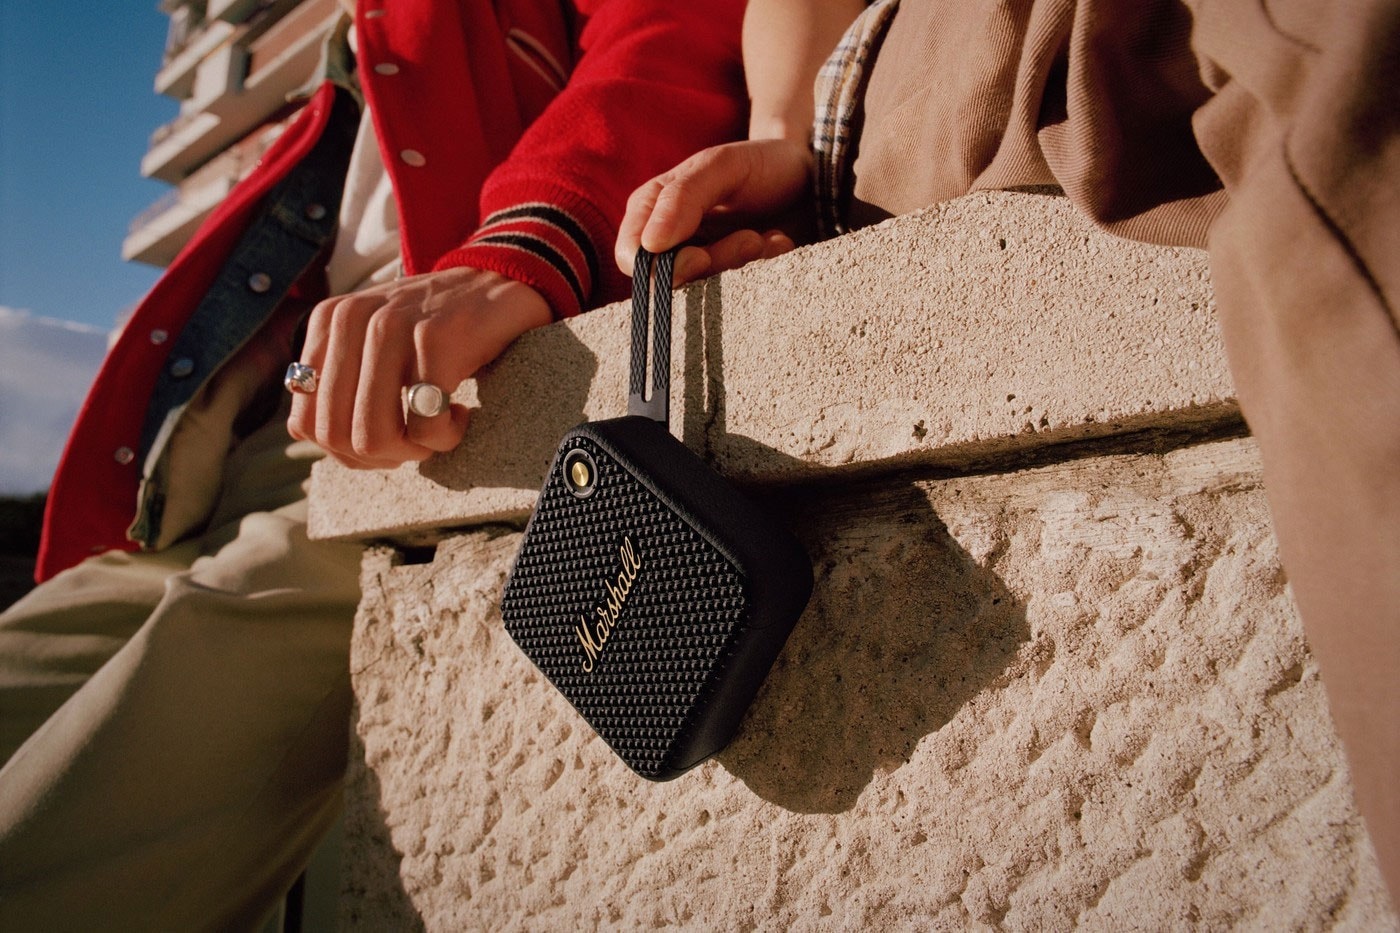 Marshall Willen Mobile Speaker mini ip67 waterproof dustproof release info date price